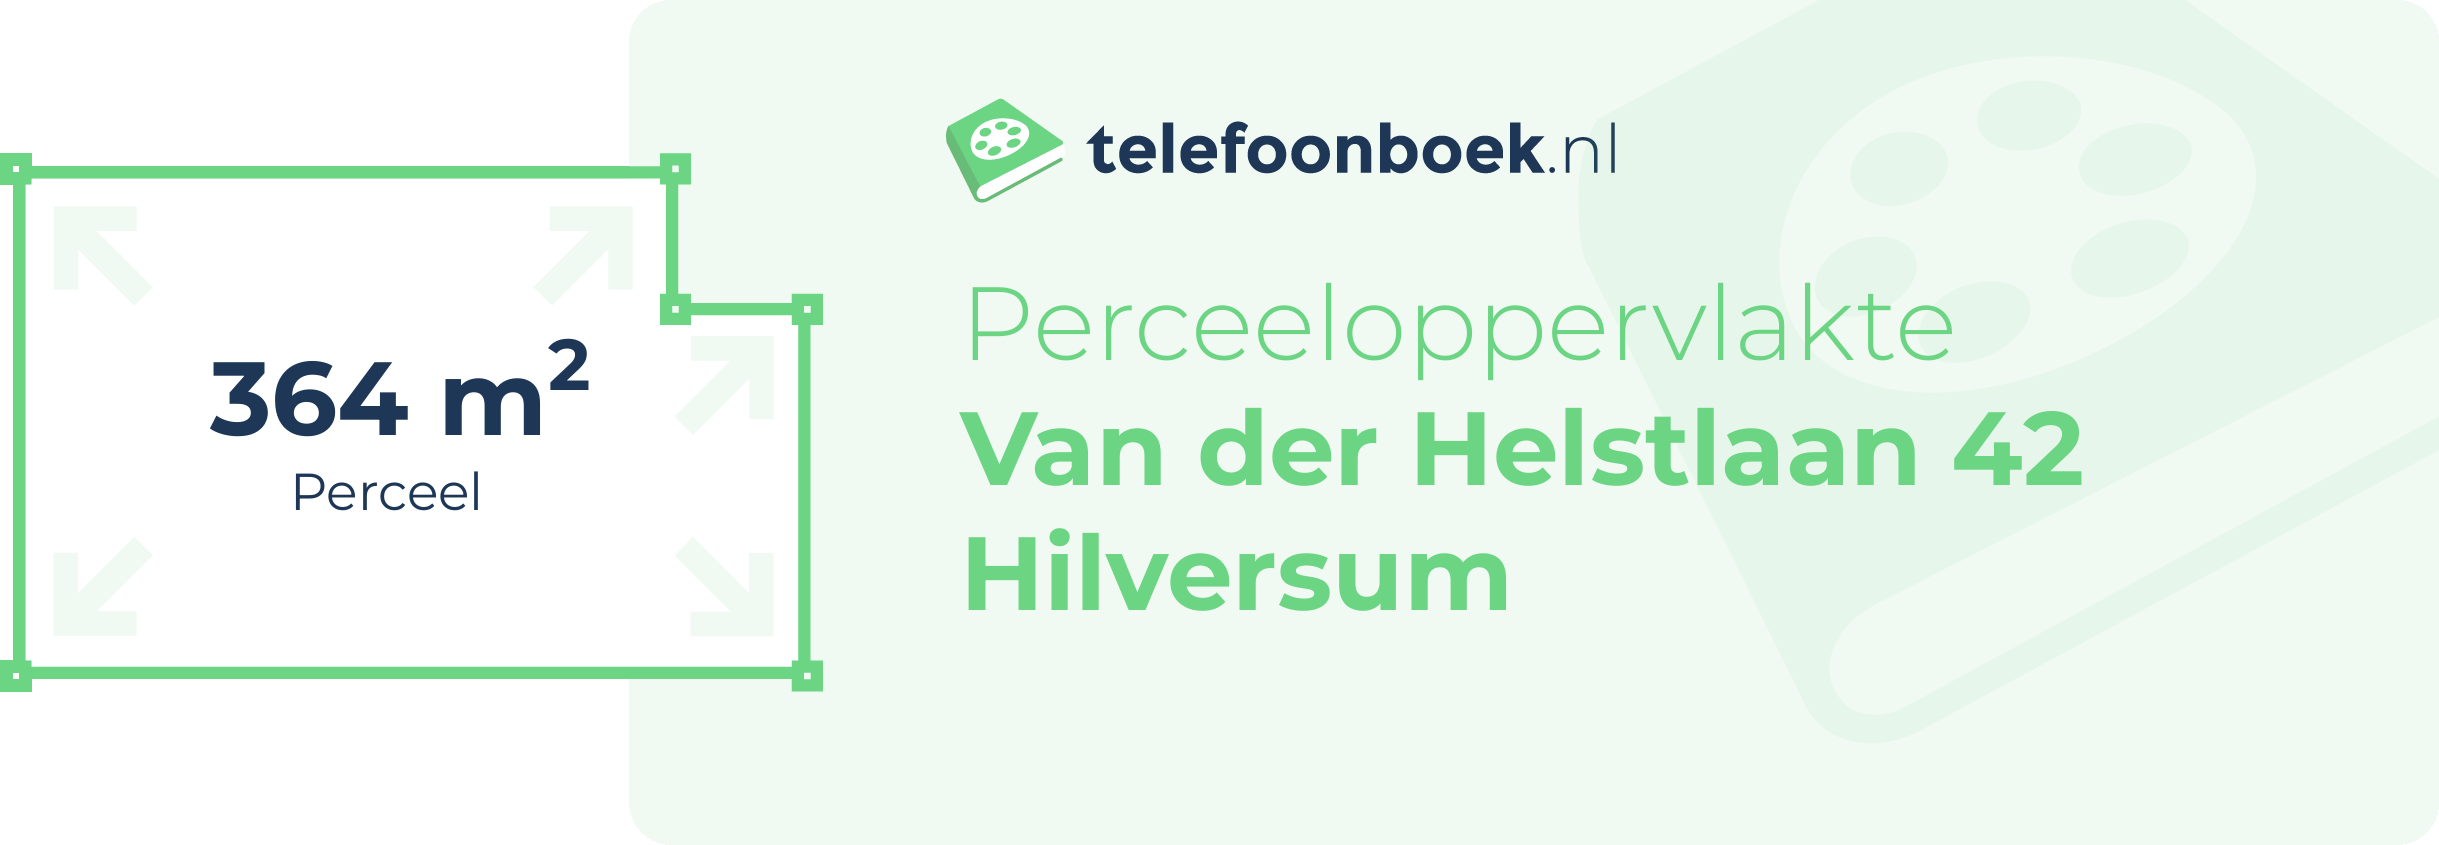 Perceeloppervlakte Van Der Helstlaan 42 Hilversum